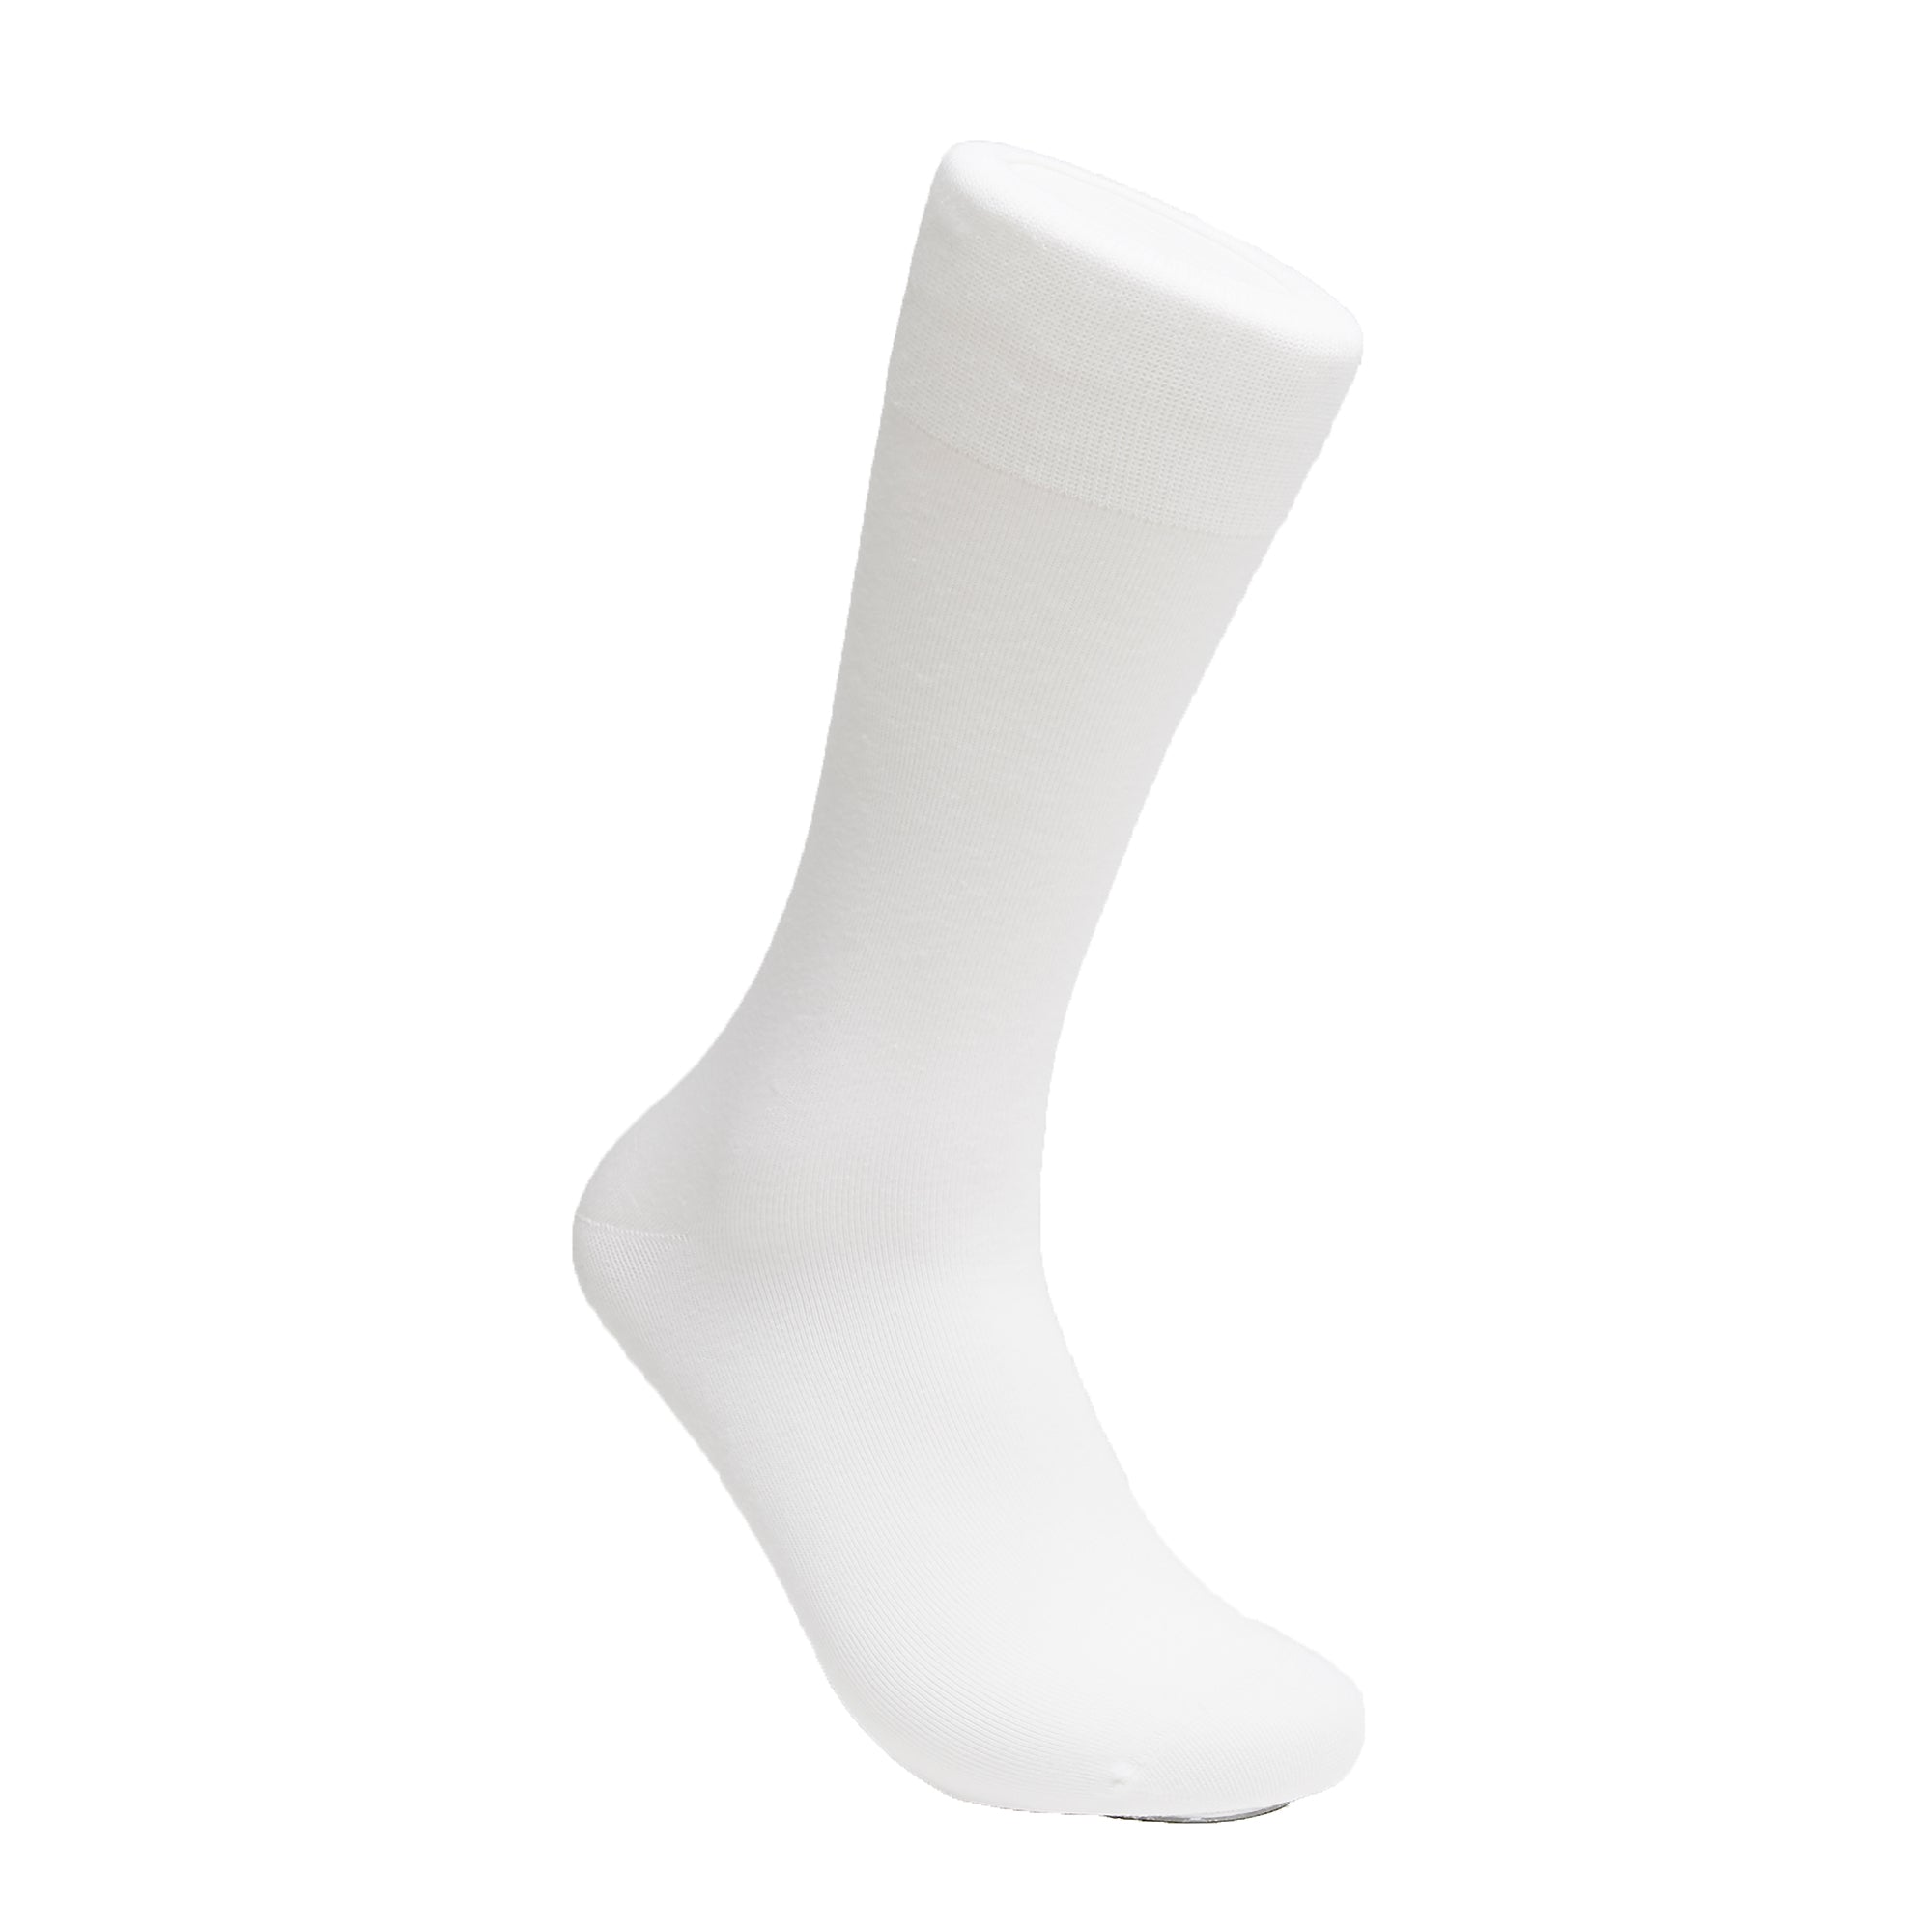 Bright White - Votta Socks